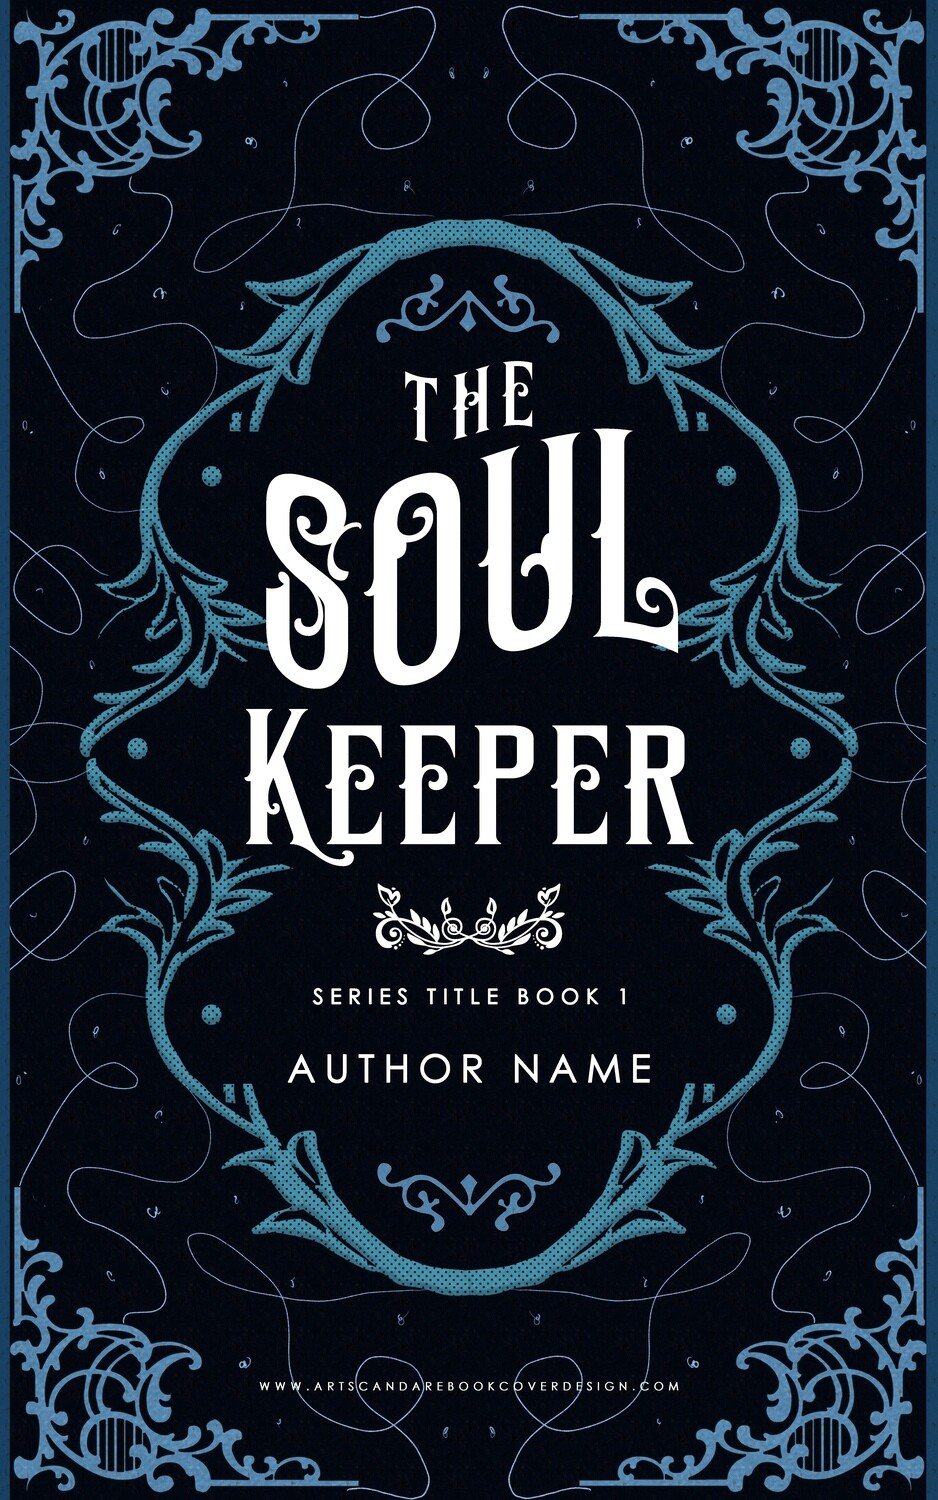 Ebook: The Soul Keeper